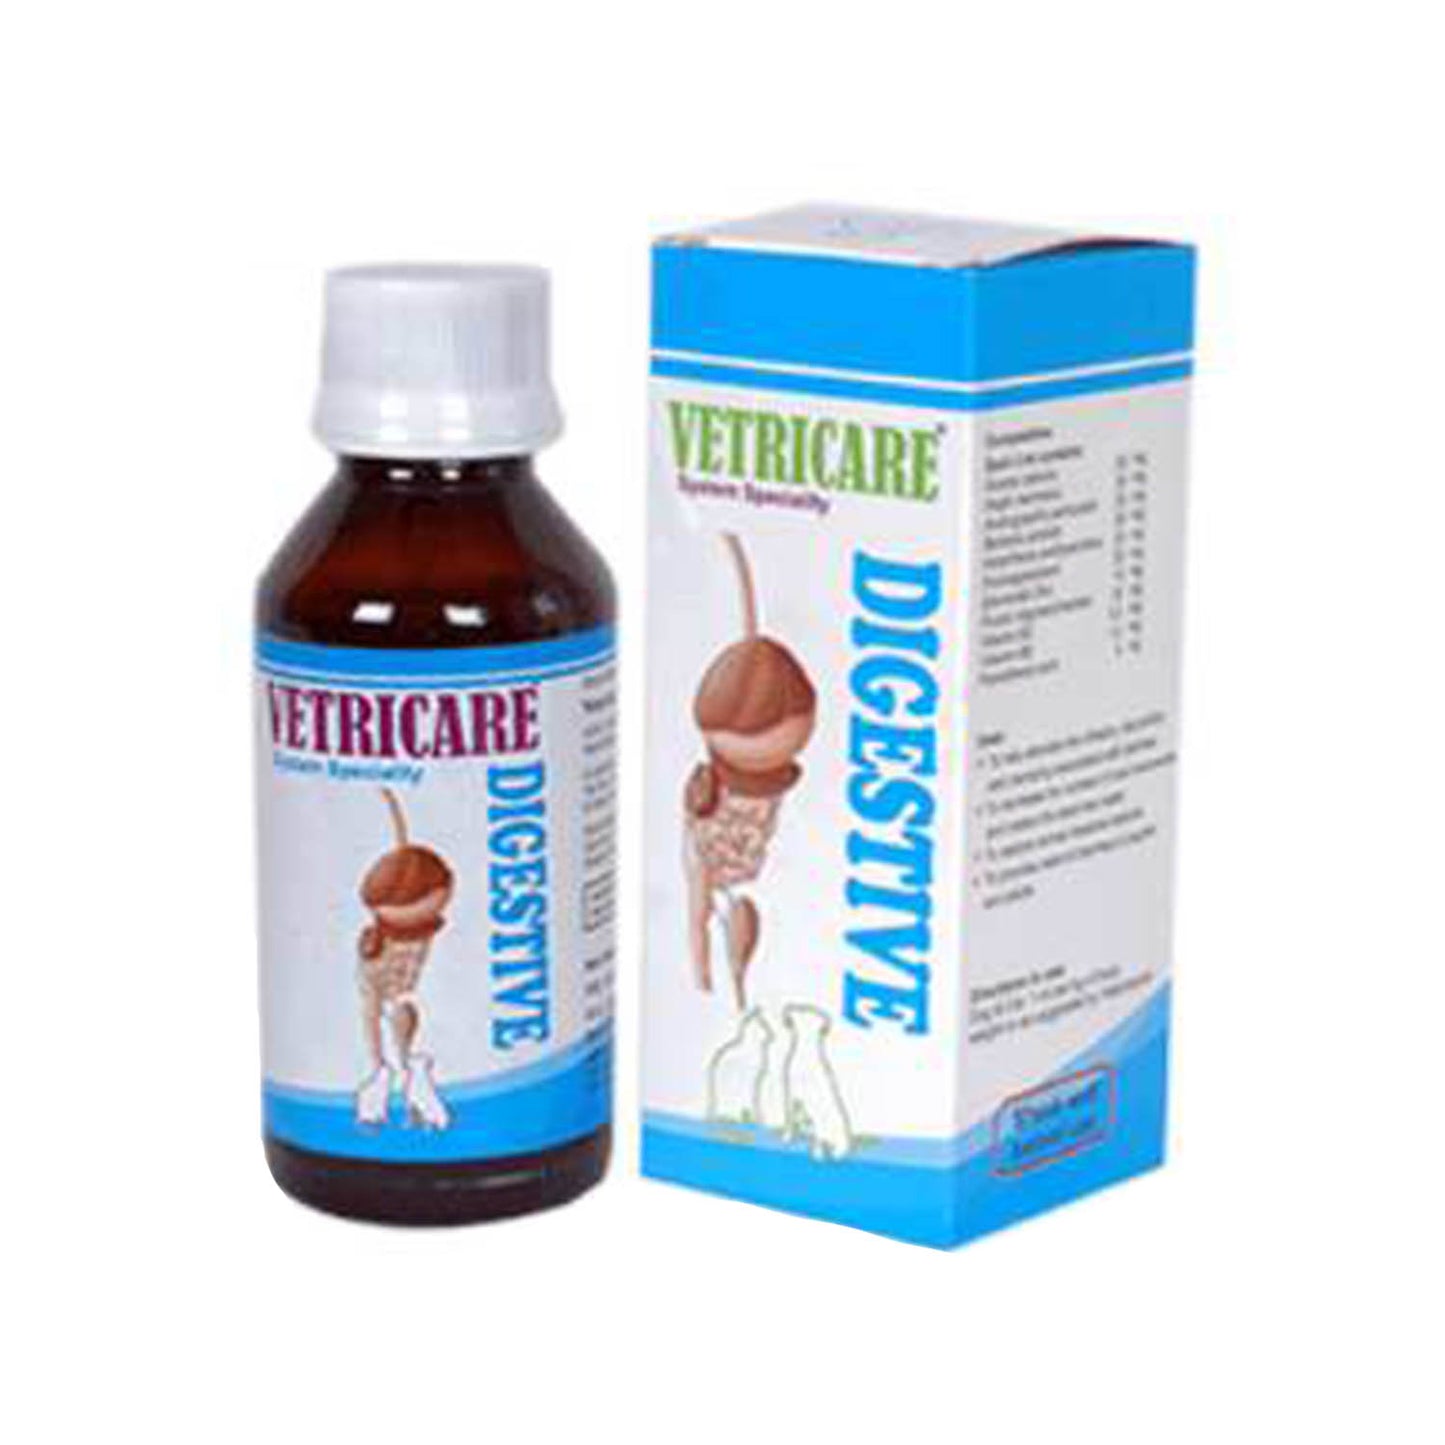 Vetrina Healthcare - Vetricare Digestive Syrup